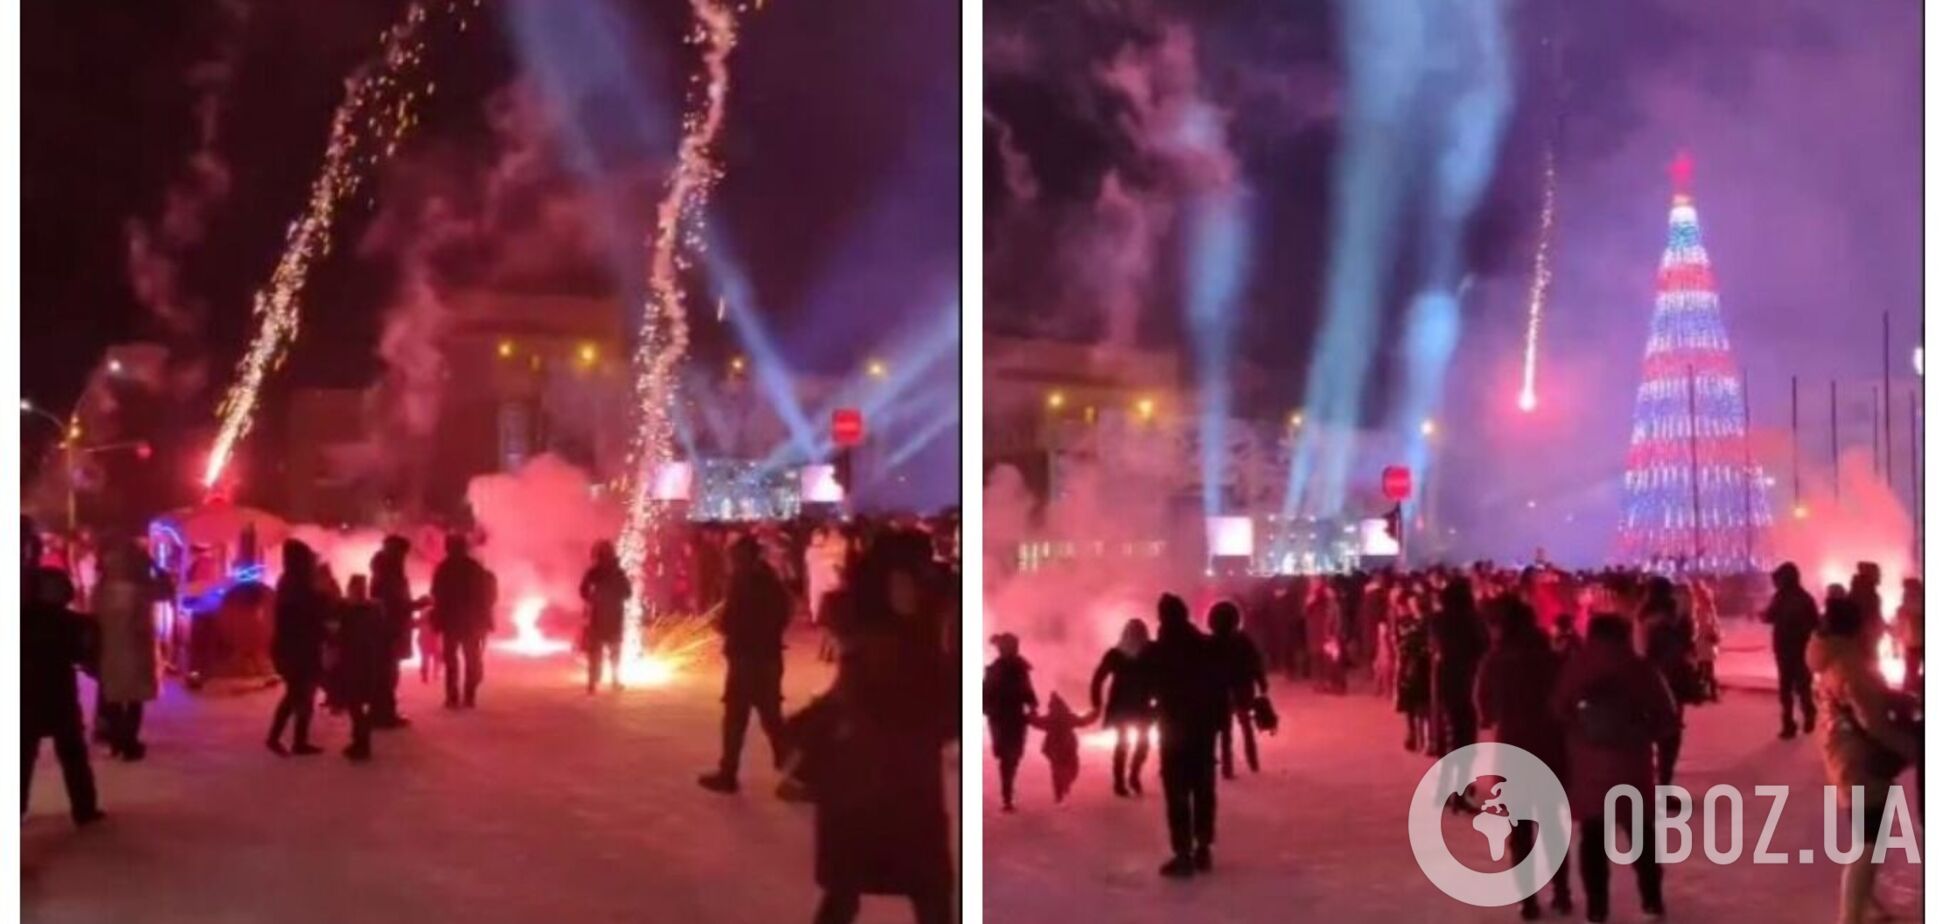 У Луганську окупанти запустили святковий салют: снаряди впали у натовп людей. Відео 18+